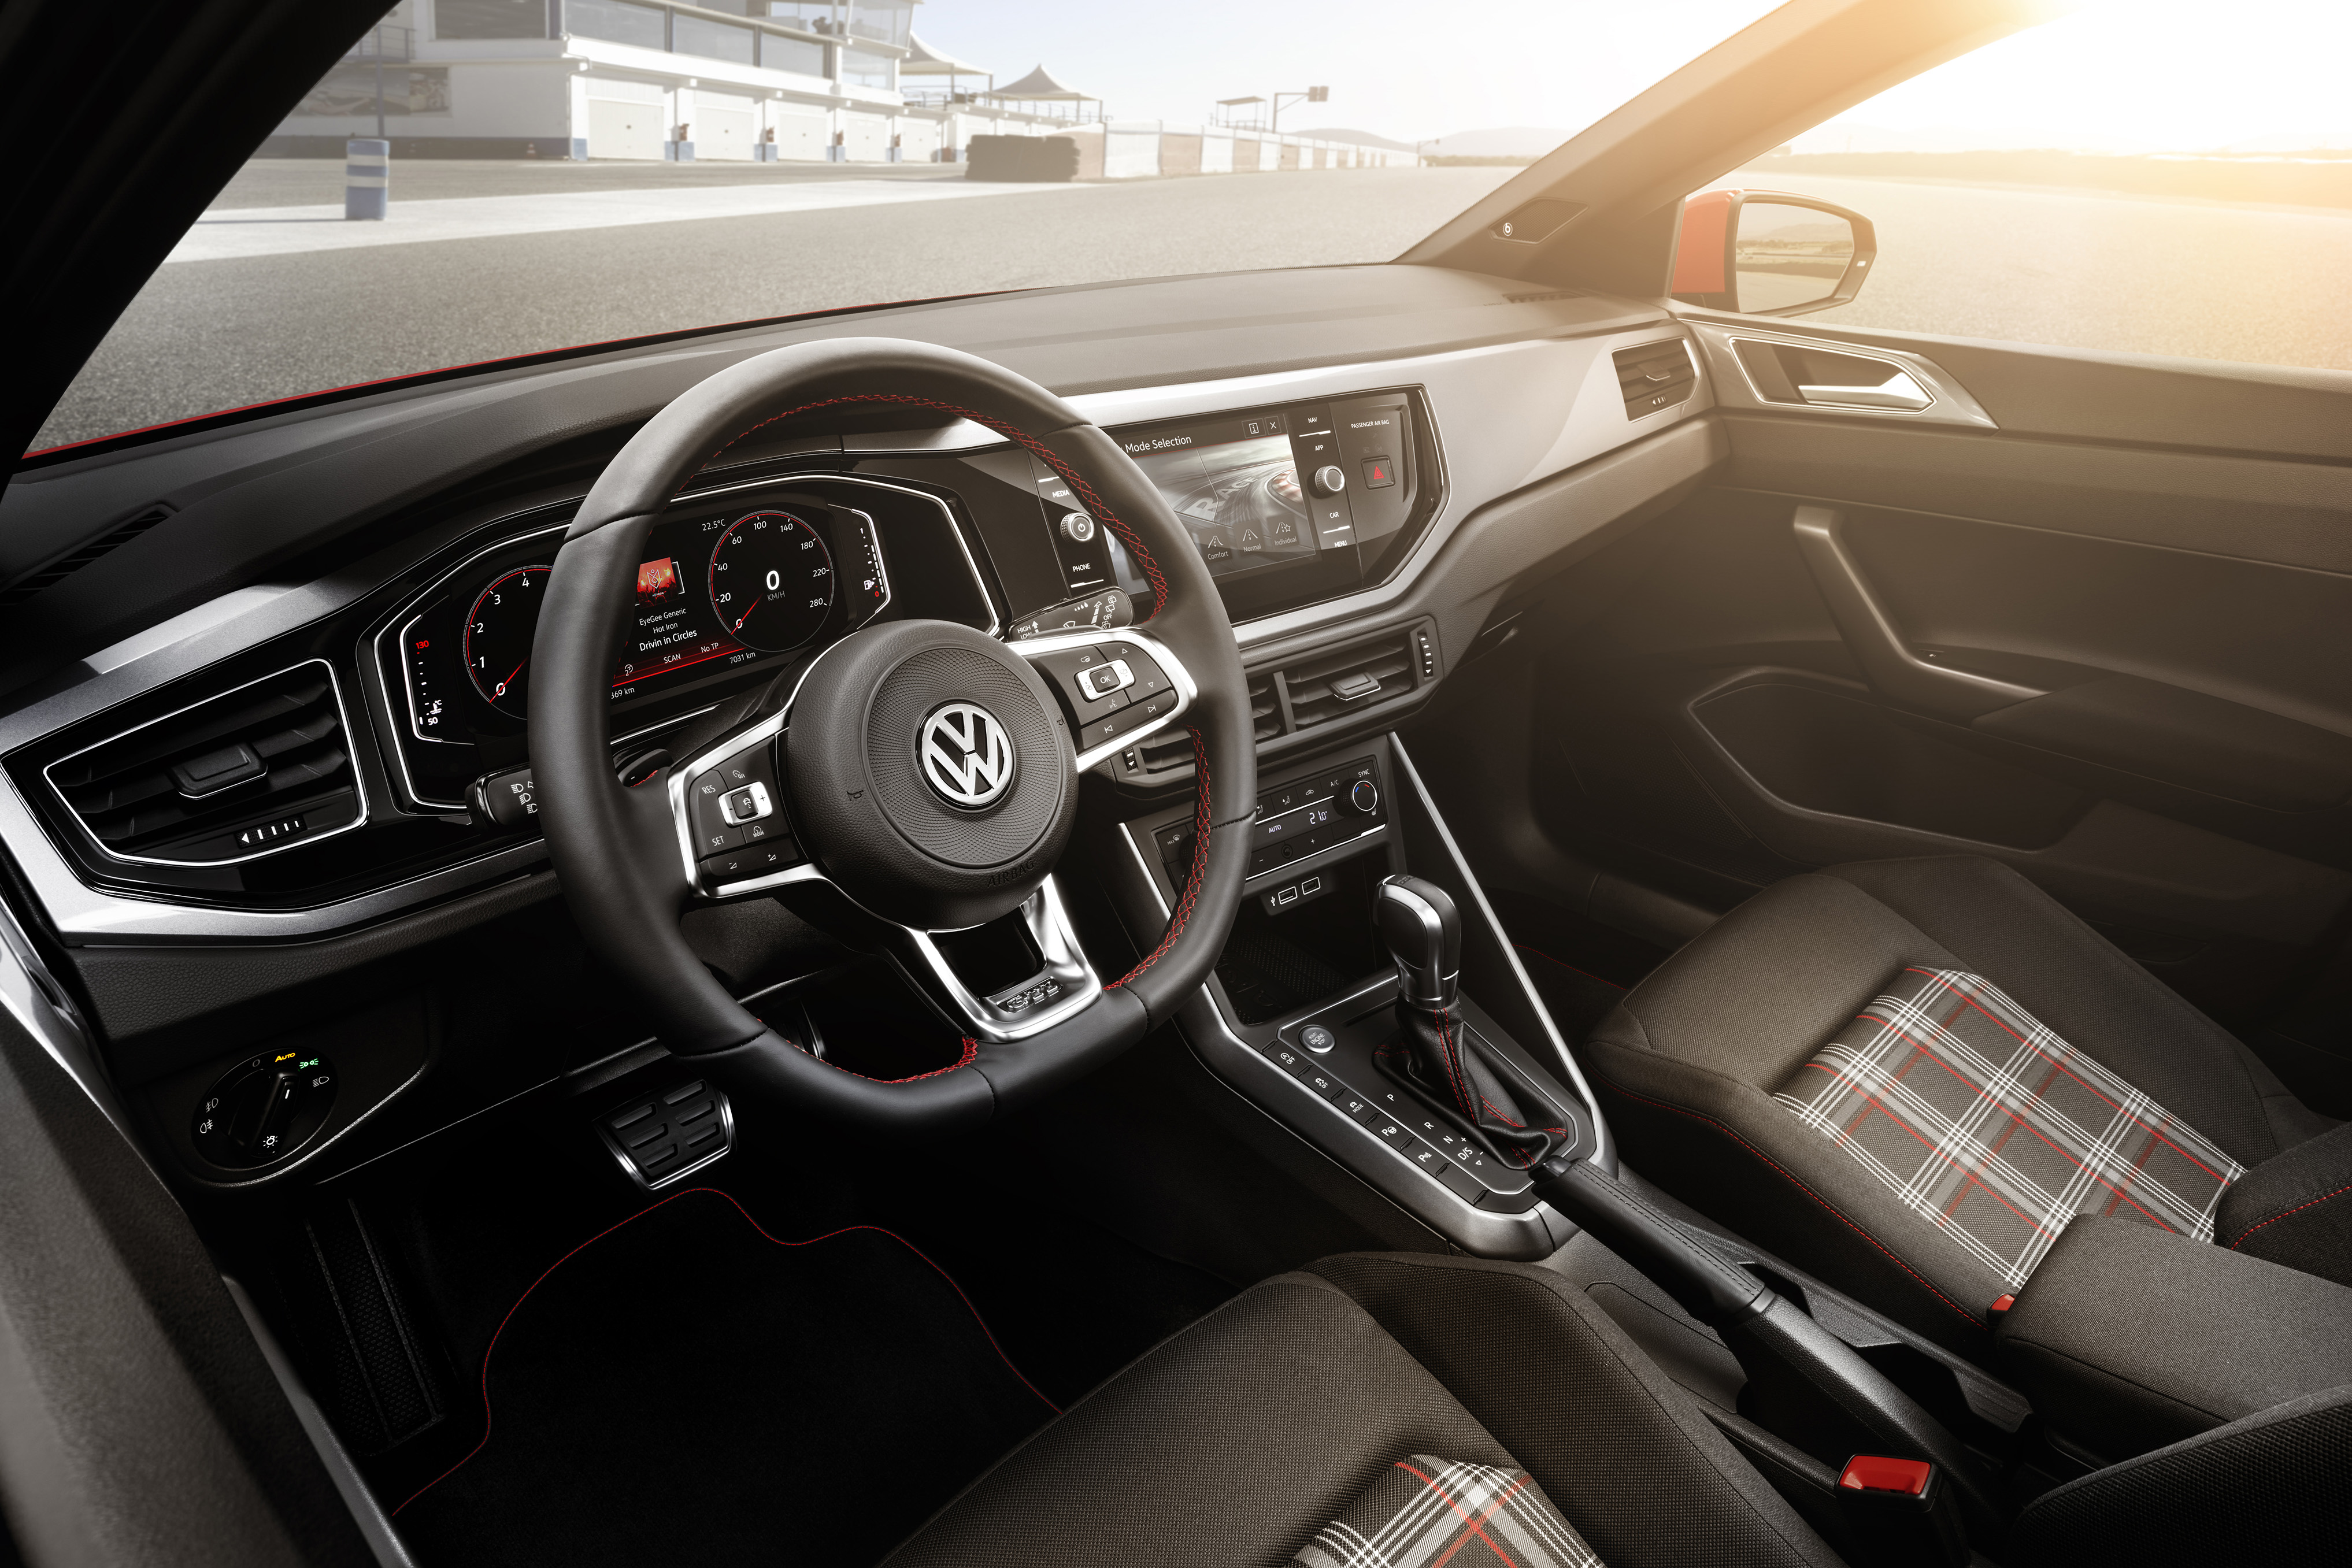 VW Polo, Her er de første billeder af den nye Volkswagen Polo